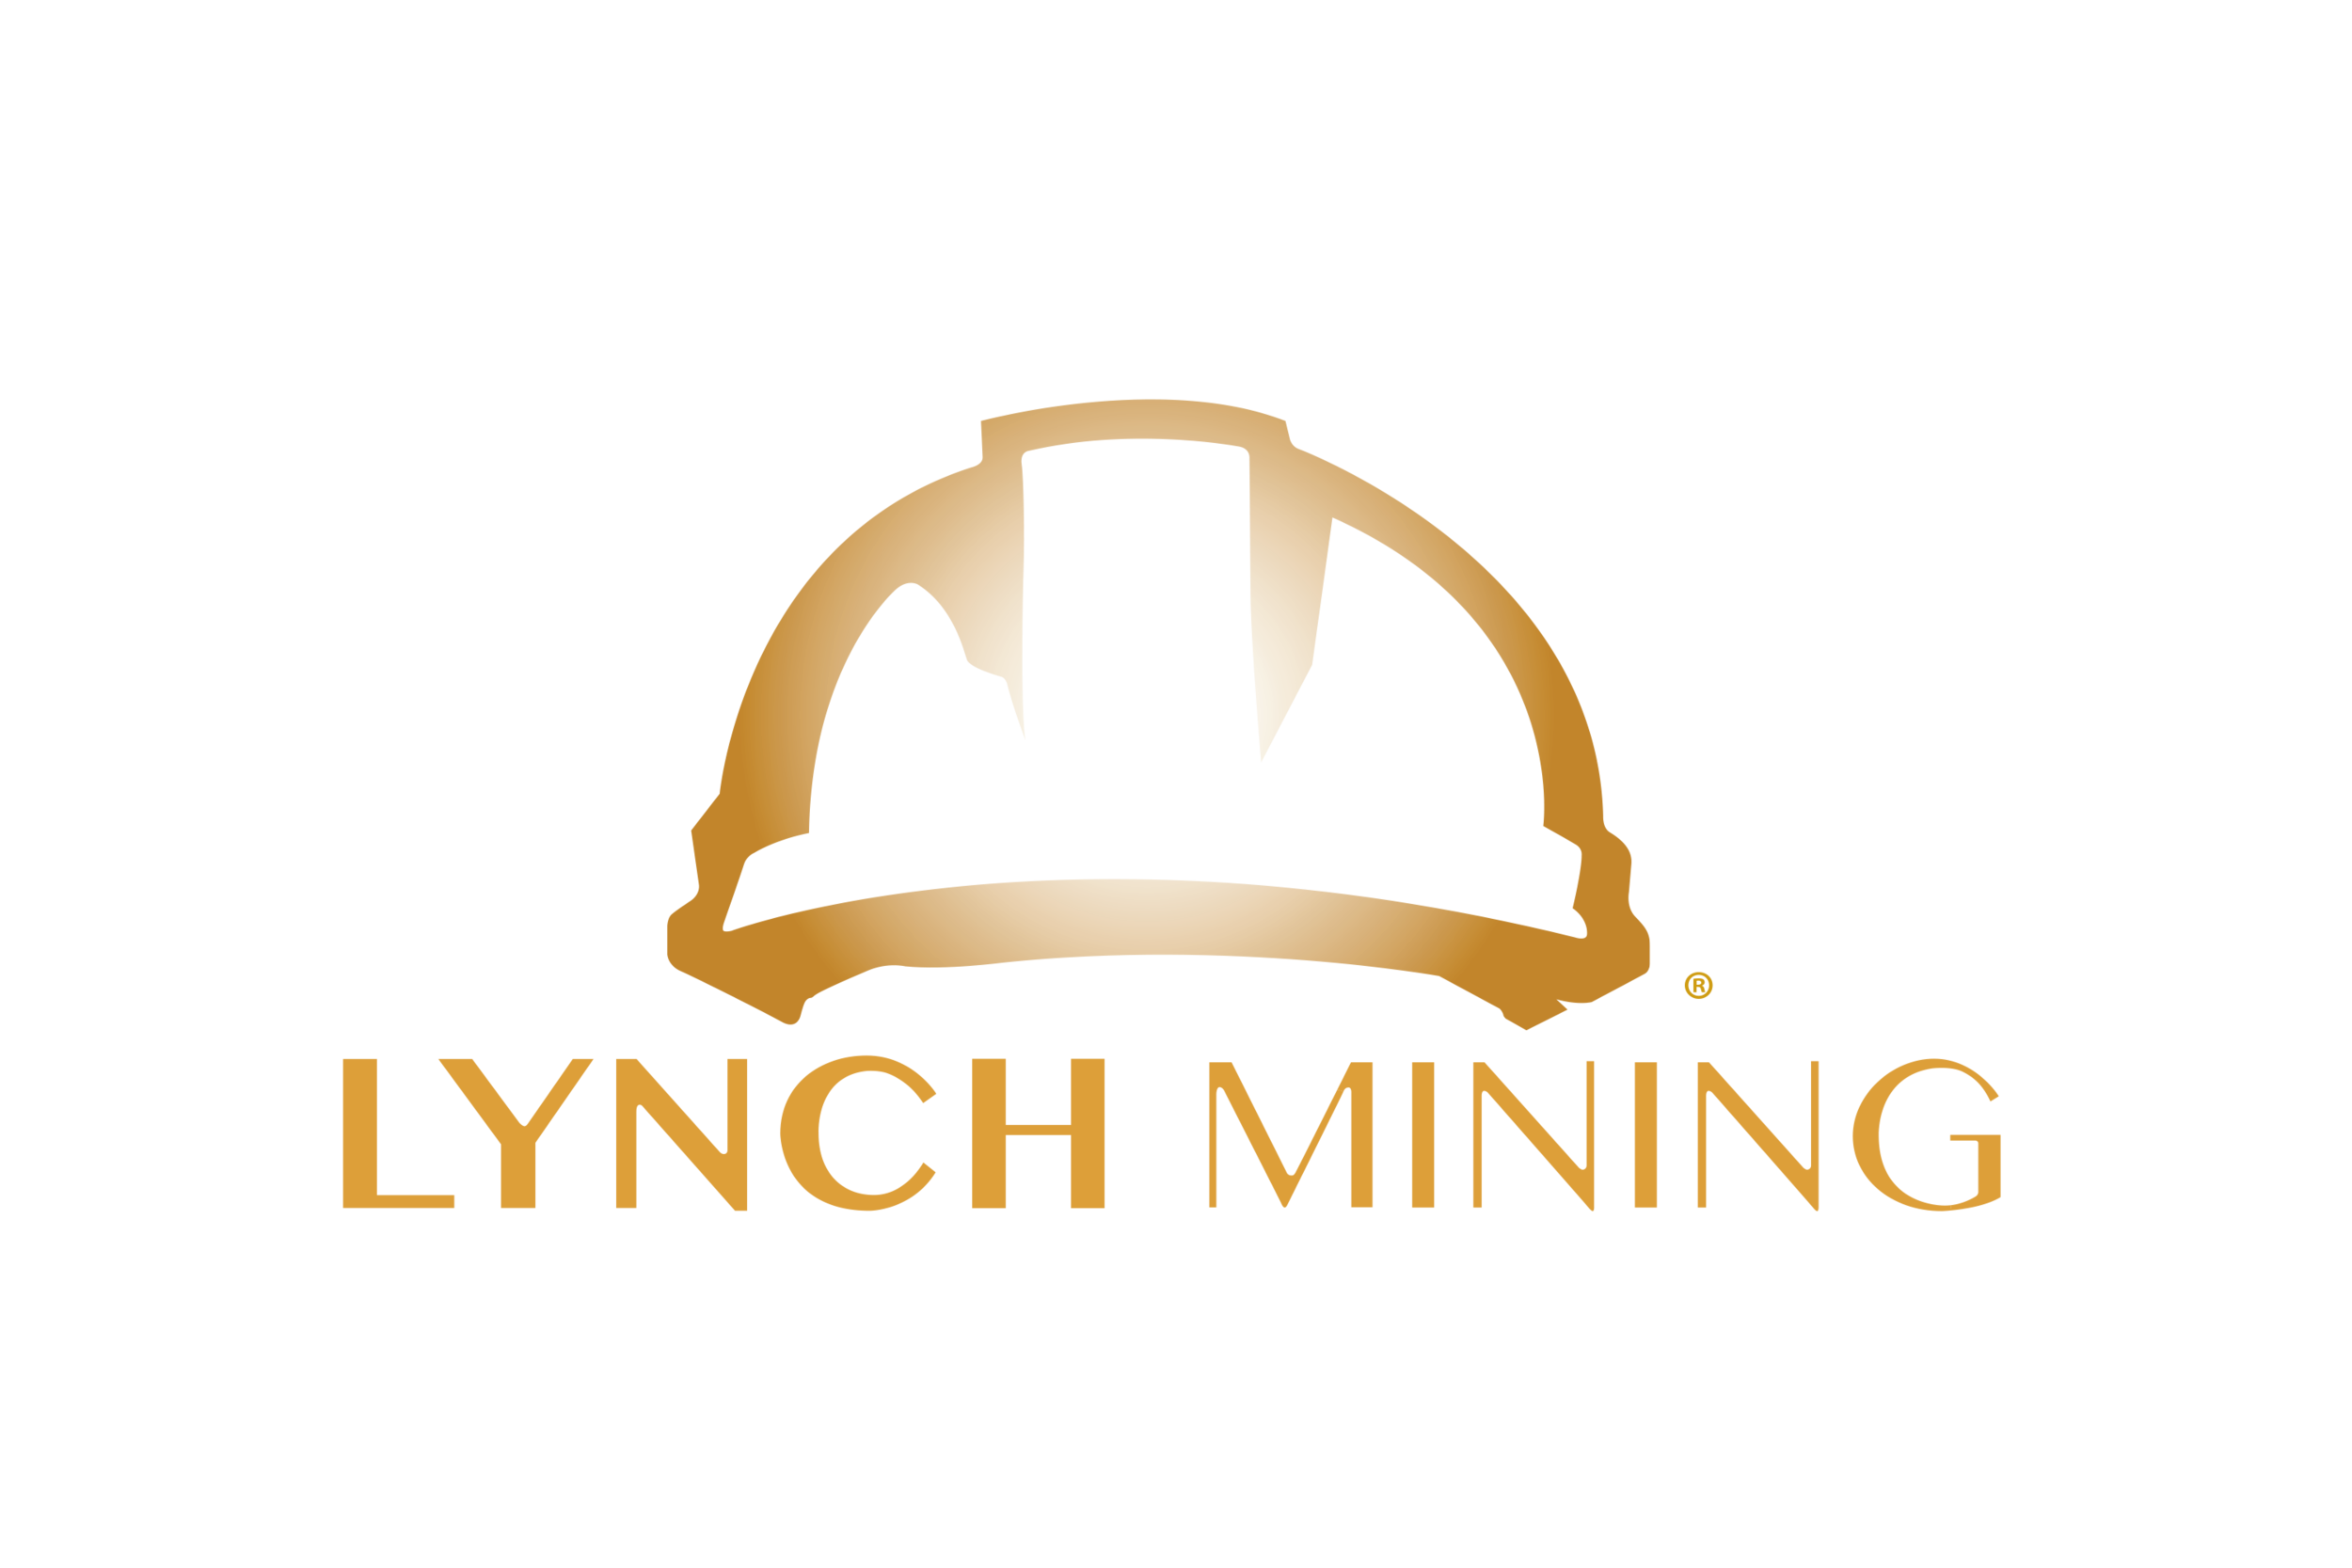 Lynch Mining, LLC®